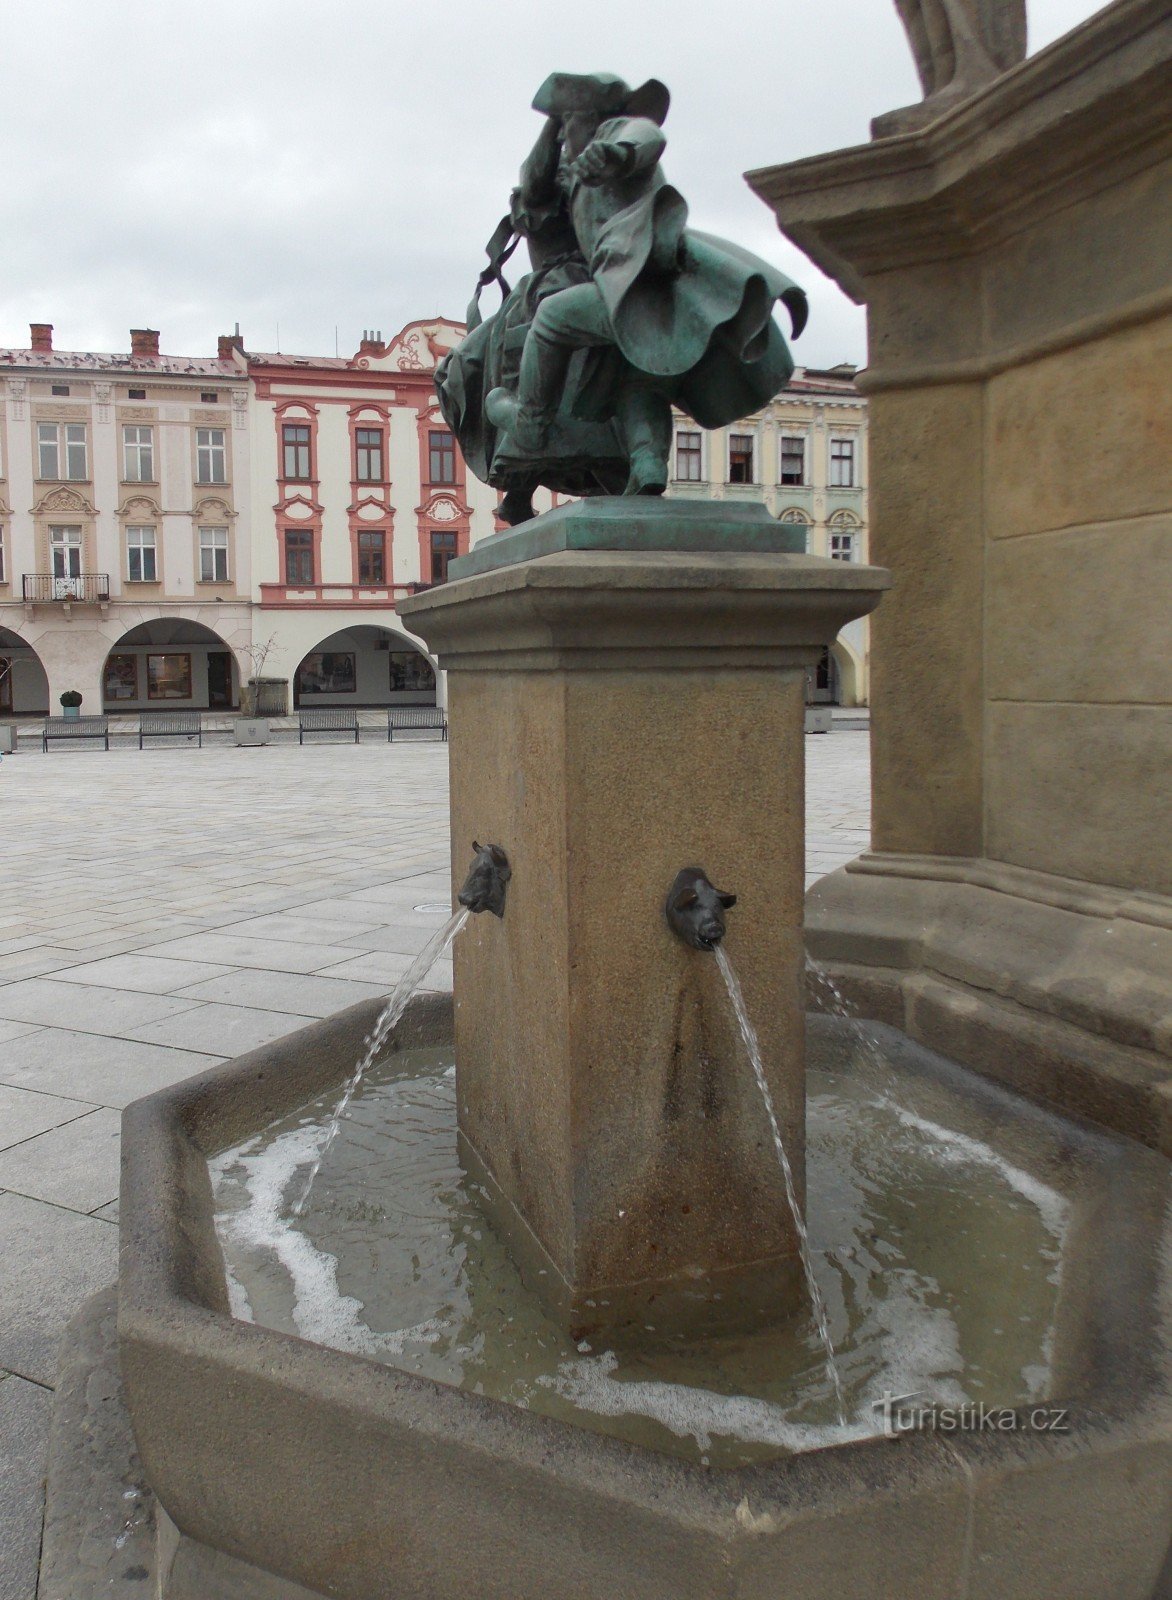 Fonte na praça em Nové Jičín